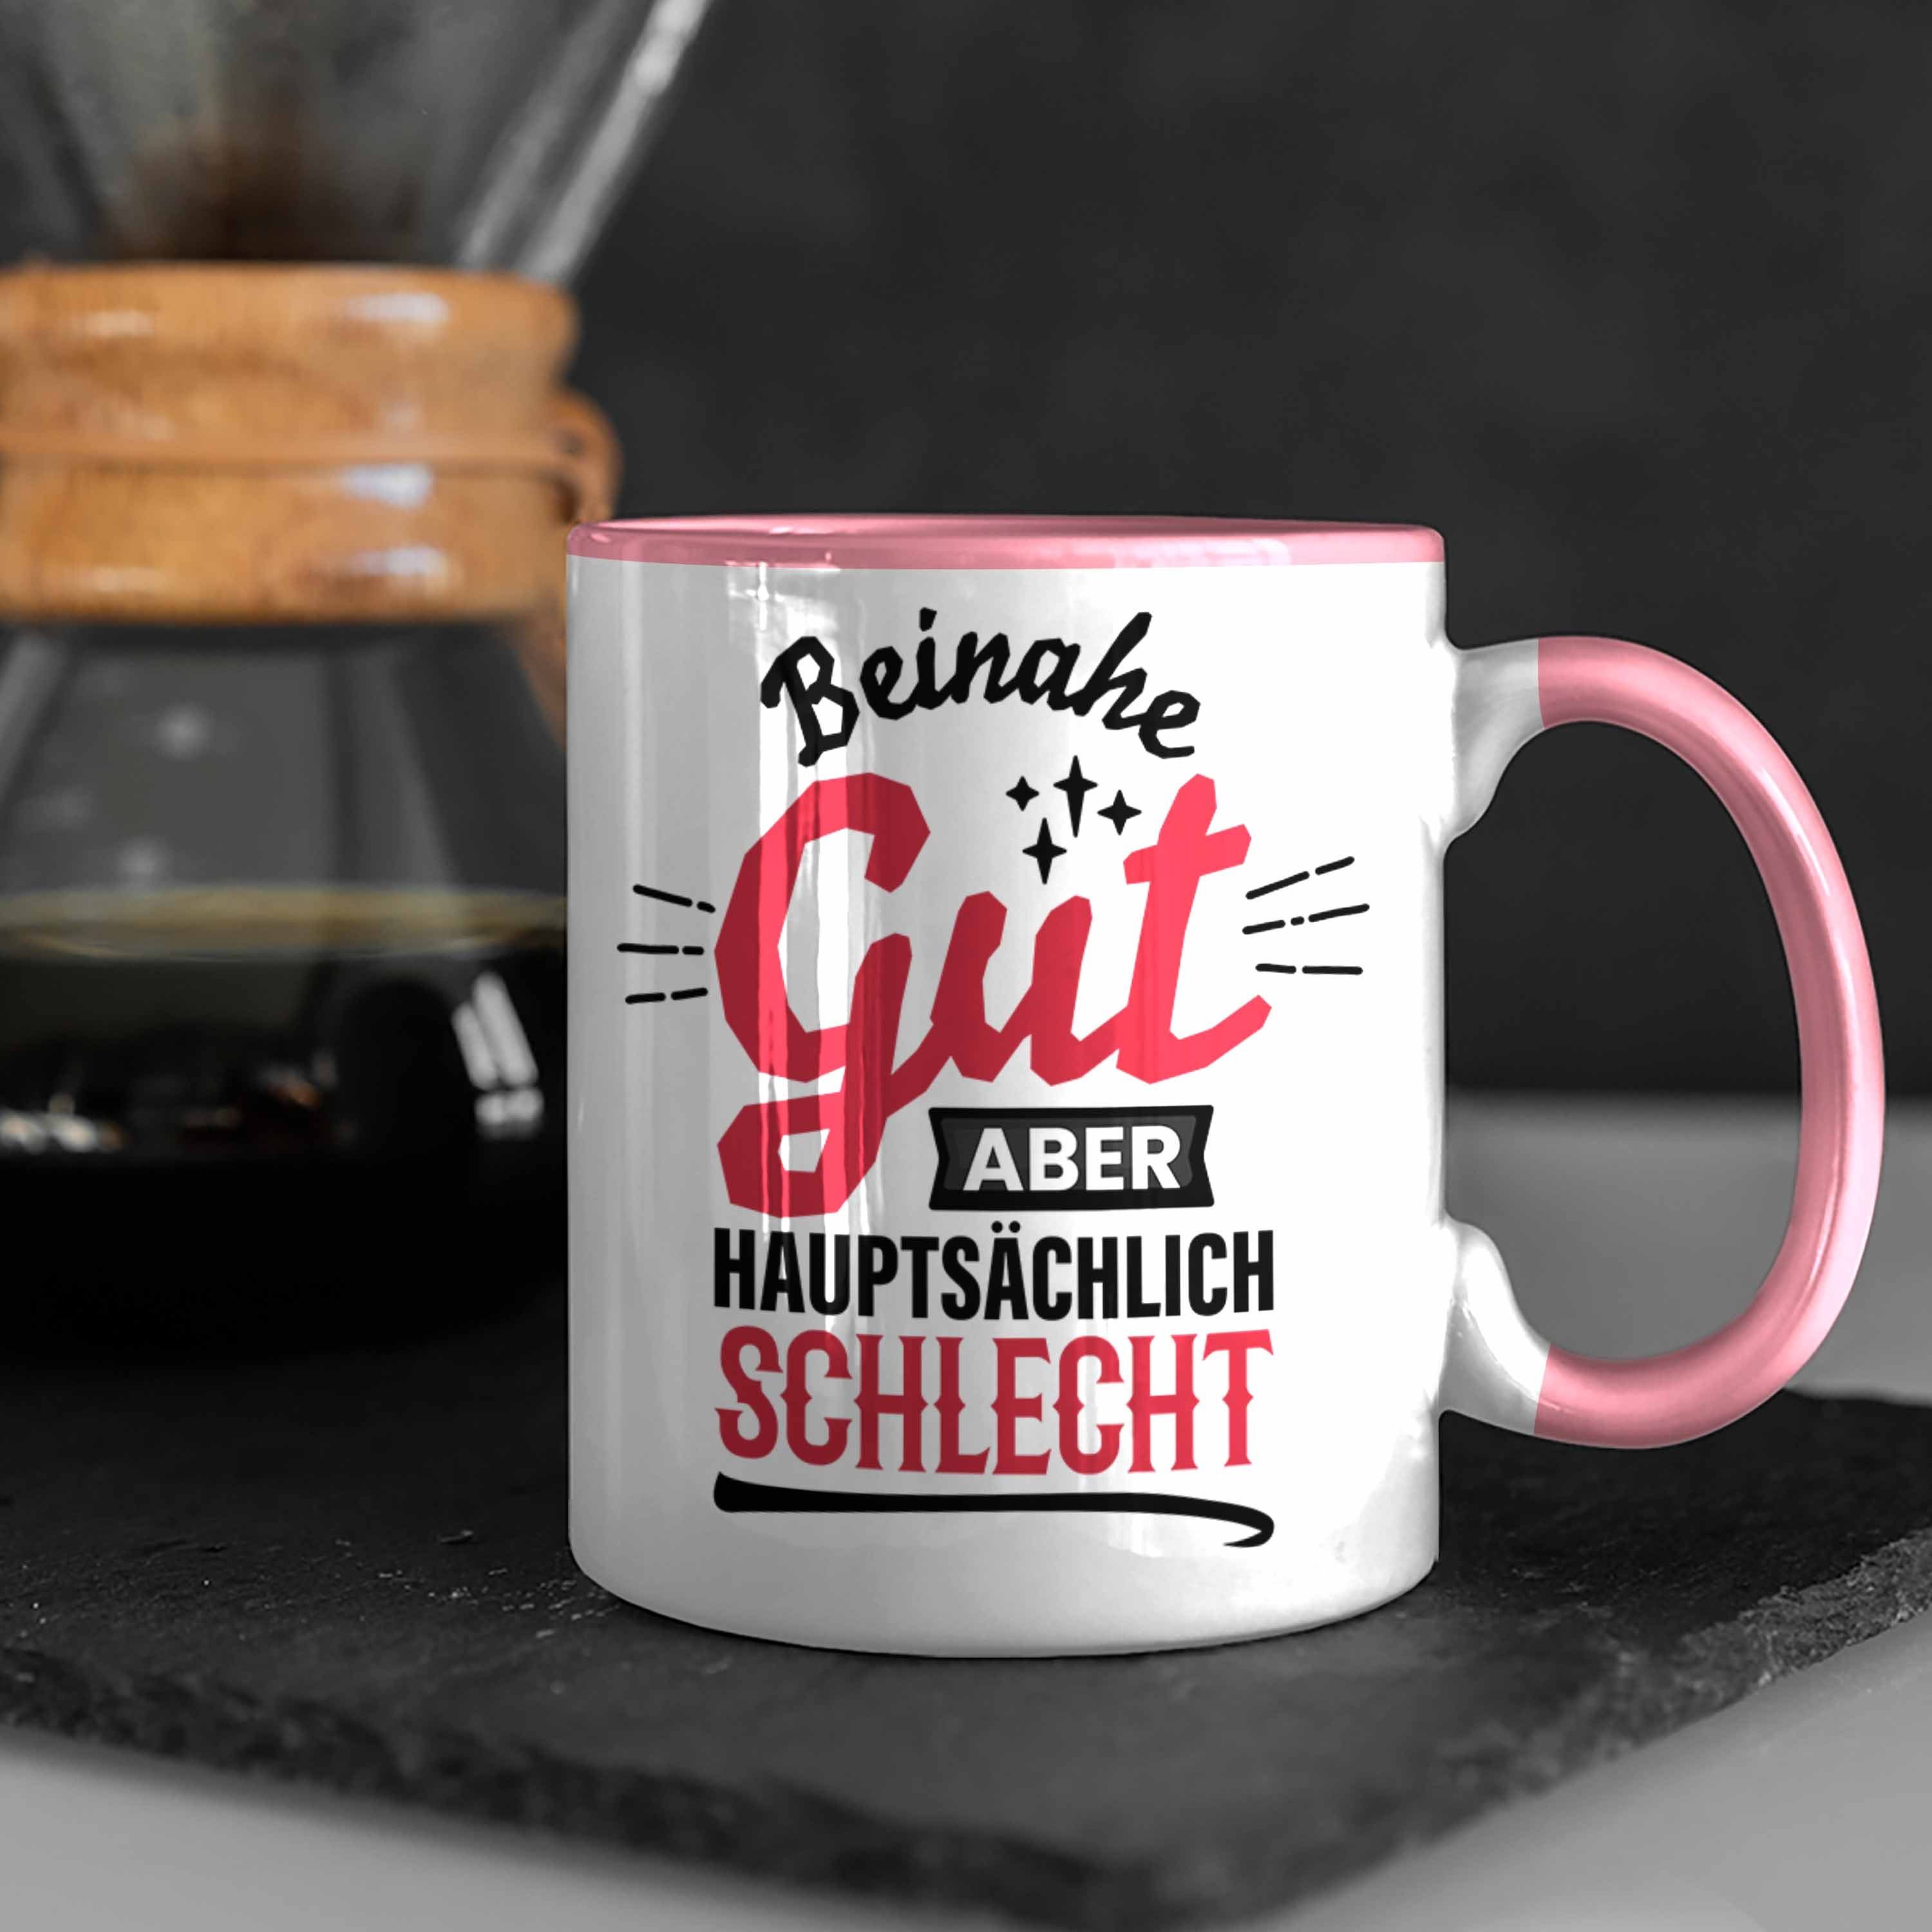 Trendation Tasse Lustiger Spruch Kaffee-Becher Gut Aber Sch Rosa Tasse Hauptsächlich Beinahe